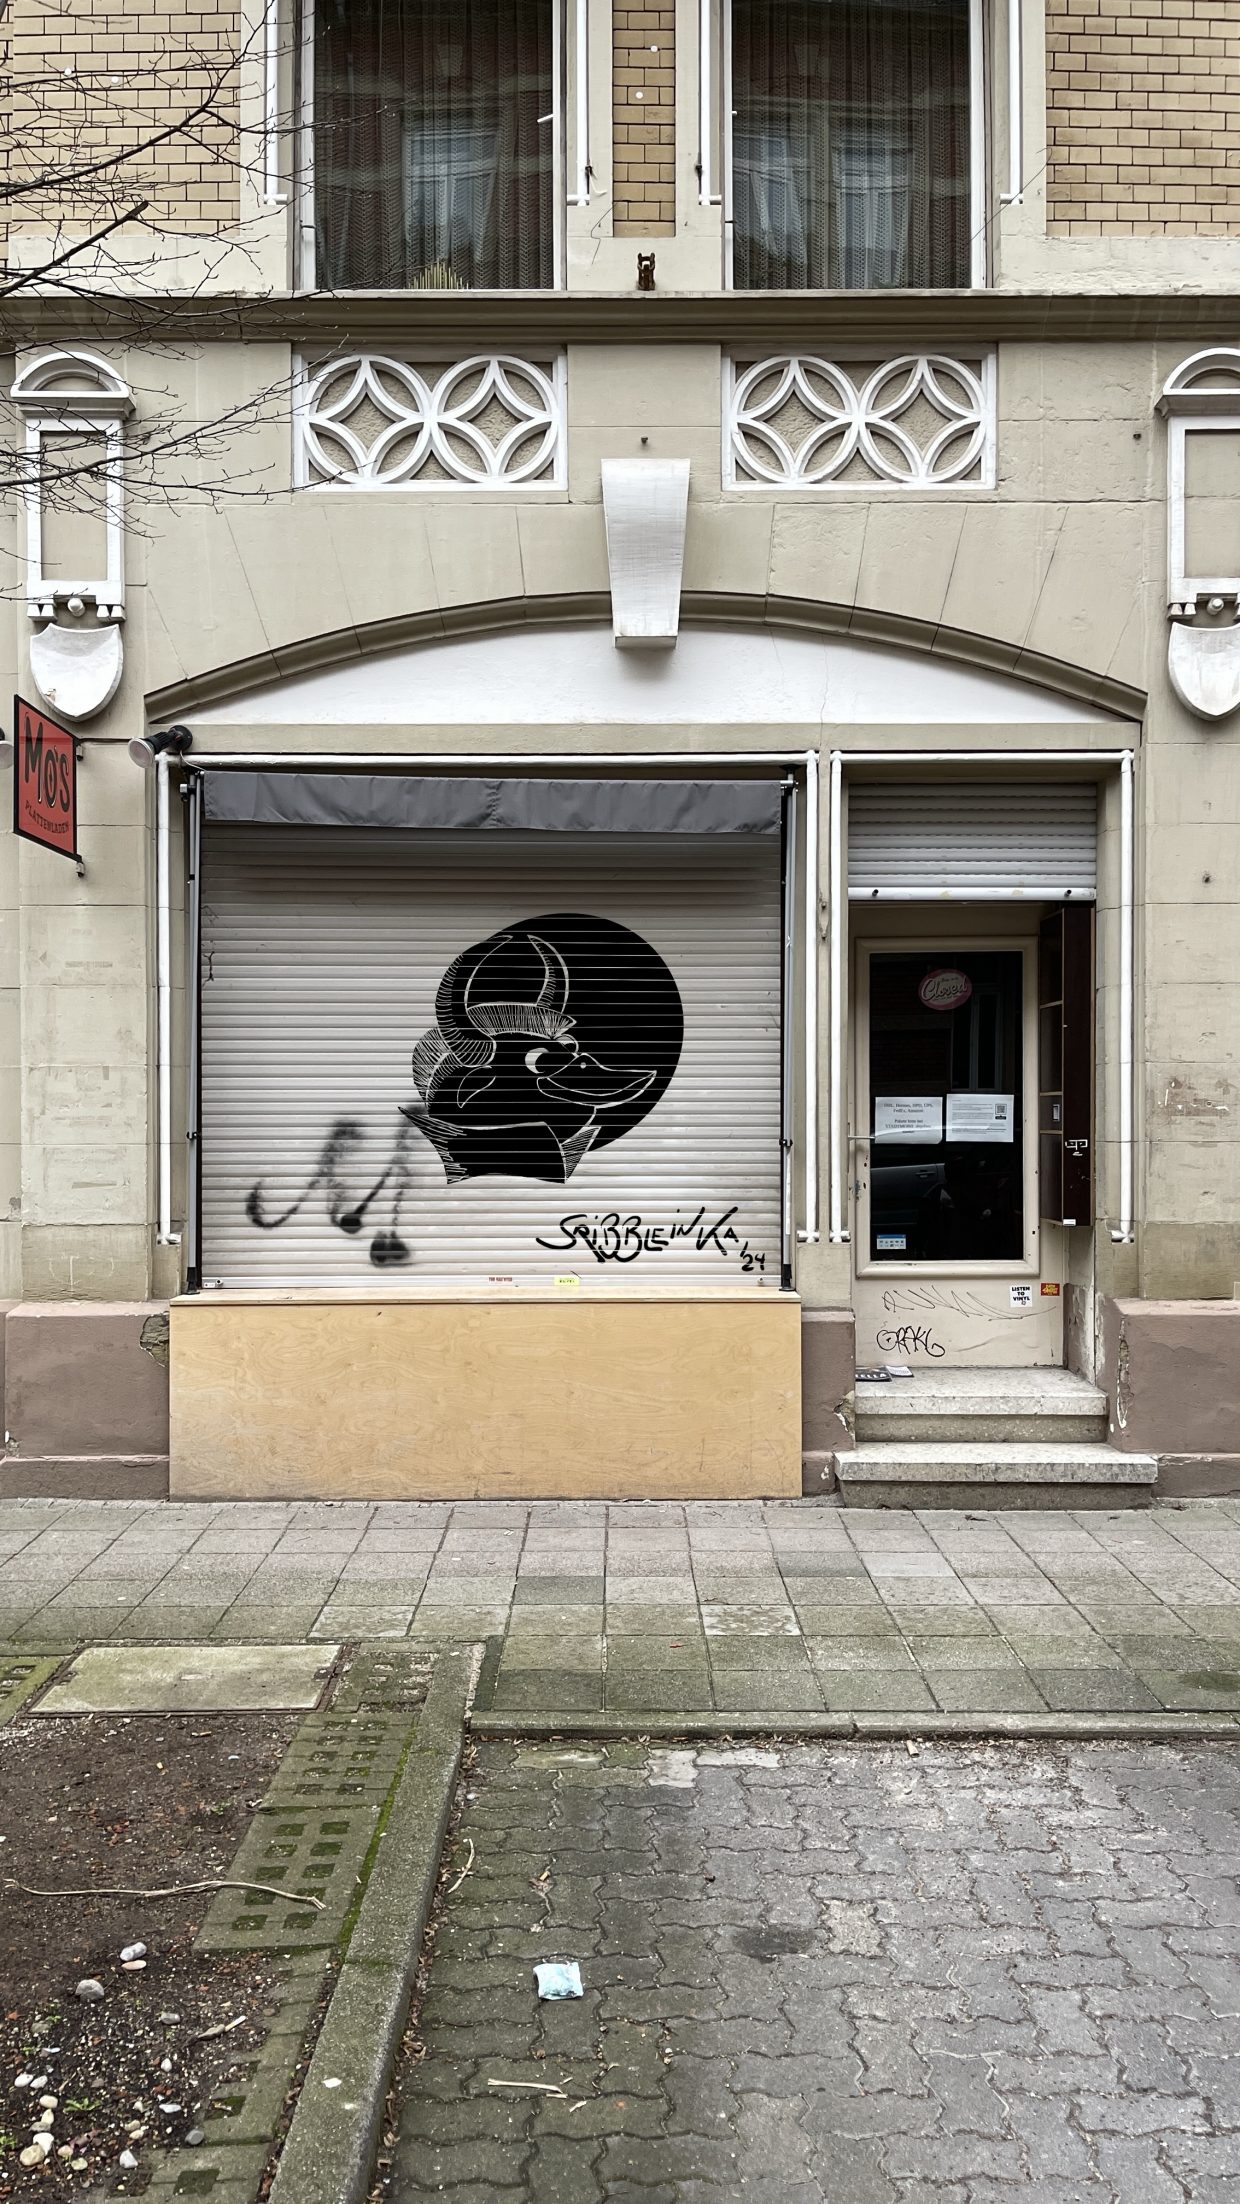 Außenseite von Mo's Plattenladen in der Rudolfstraße 17 in der Karlsruher Oststadt. Hier sieht man auf dem Rolladen ein Graffiti eines Stiers mit Irokesenschnitt und Entenschnabel